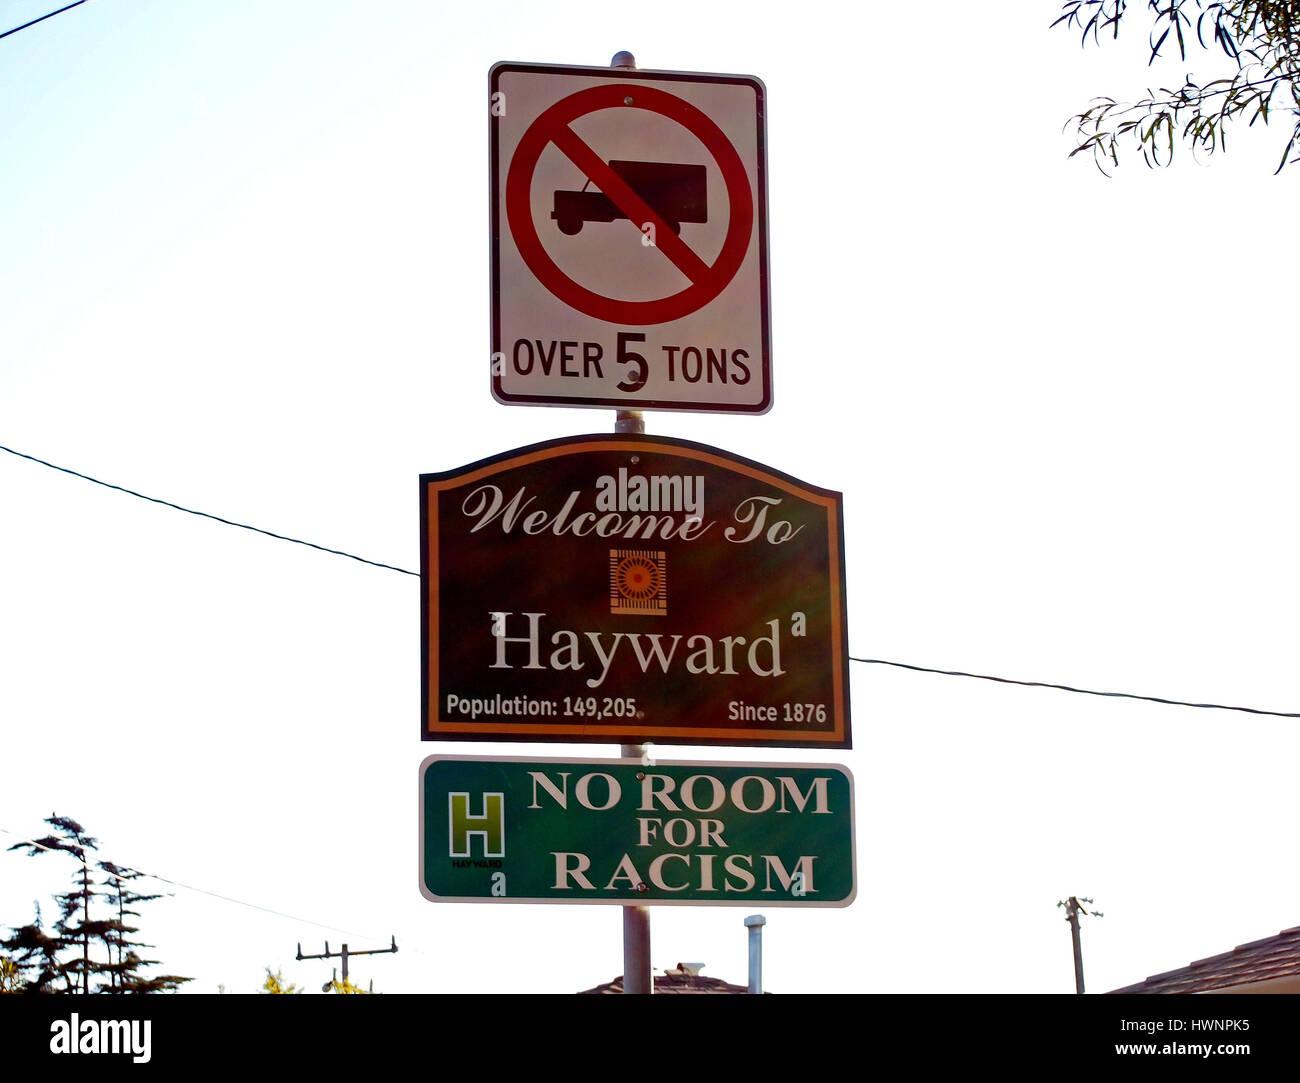 Benvenuto a Hayward, California, H n. Camera per il razzismo, no camion oltre 5 tonnellate, segni, Foto Stock